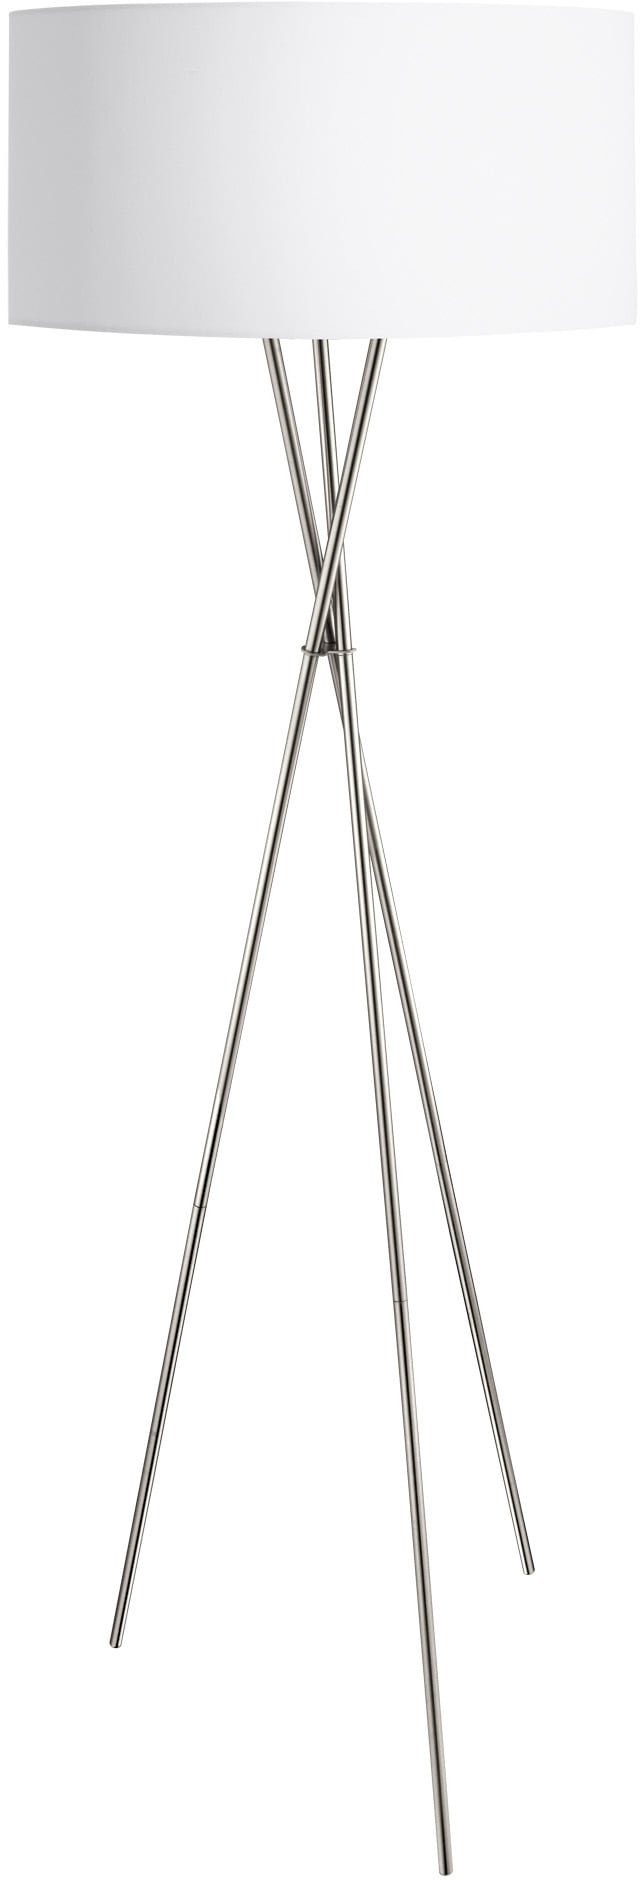 EGLO Stehlampe »FONDACHELLI«, 1 flammig-flammig, weiß nickel / Ø51 x H151,5 cm / Hochwertige Stehlampe